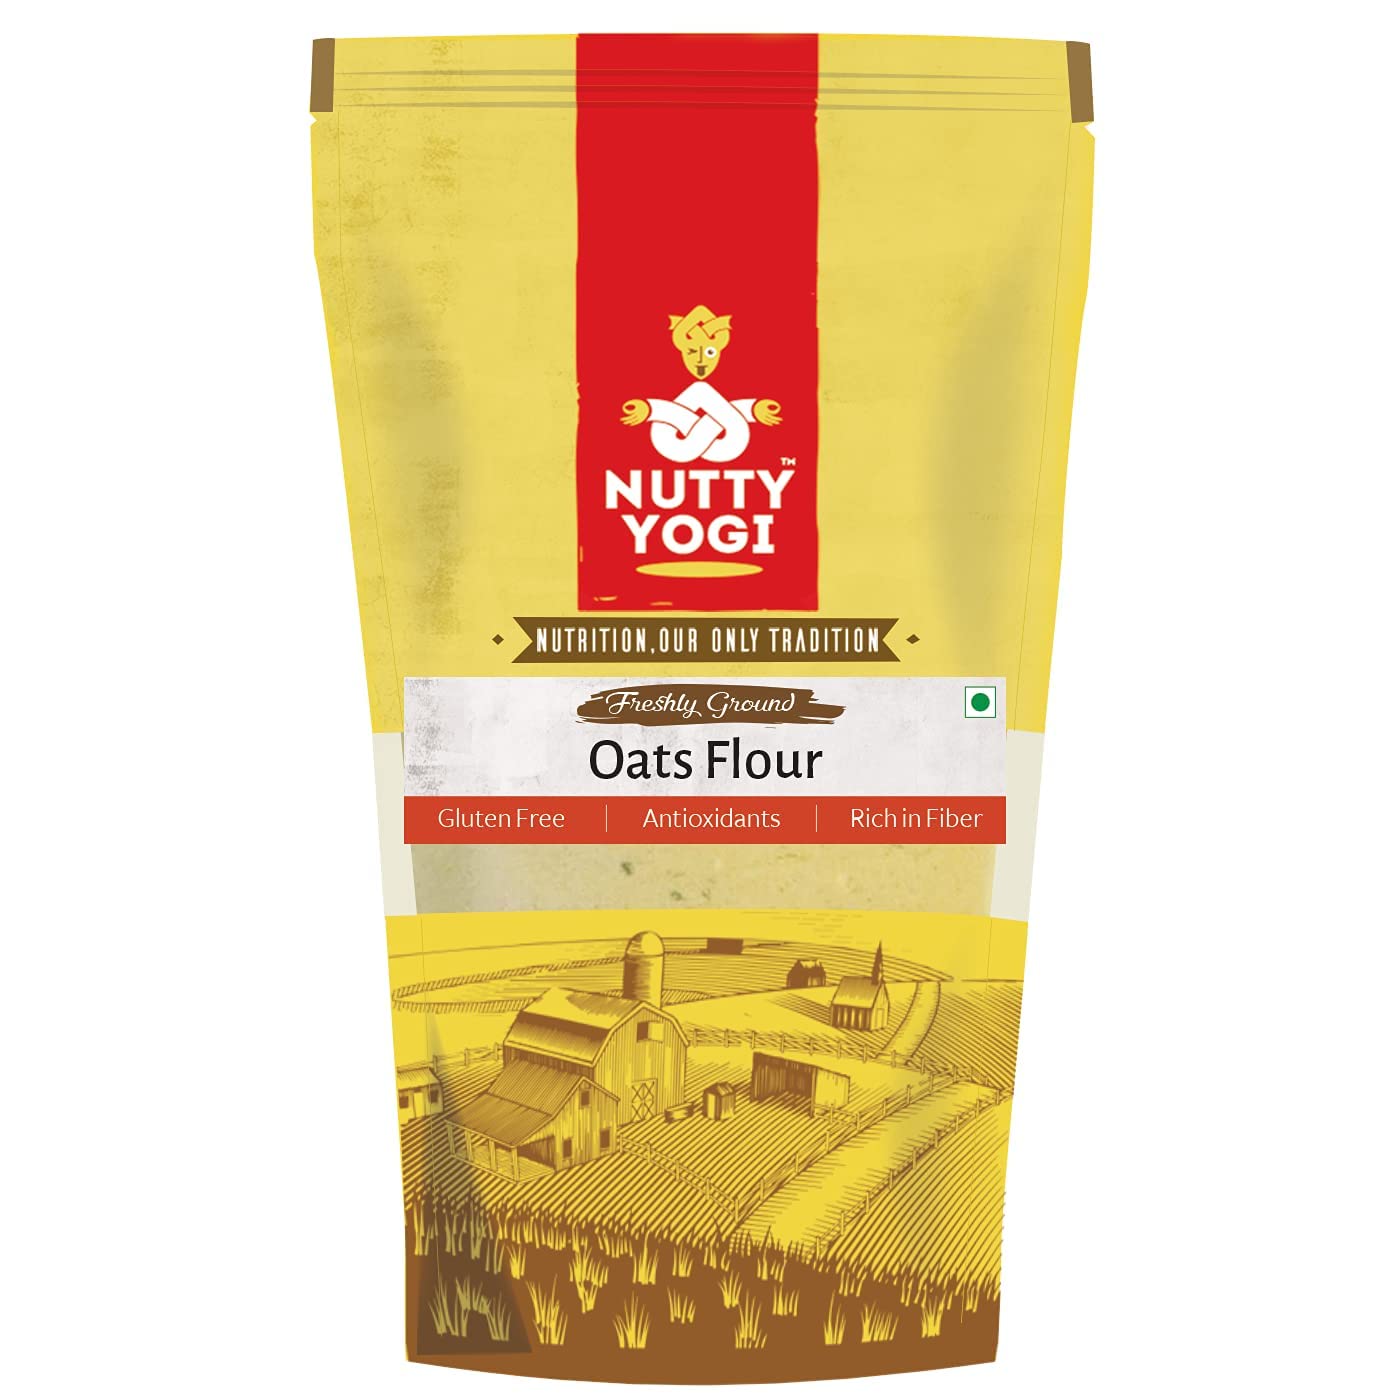 Nutty Yogi Oats Flour